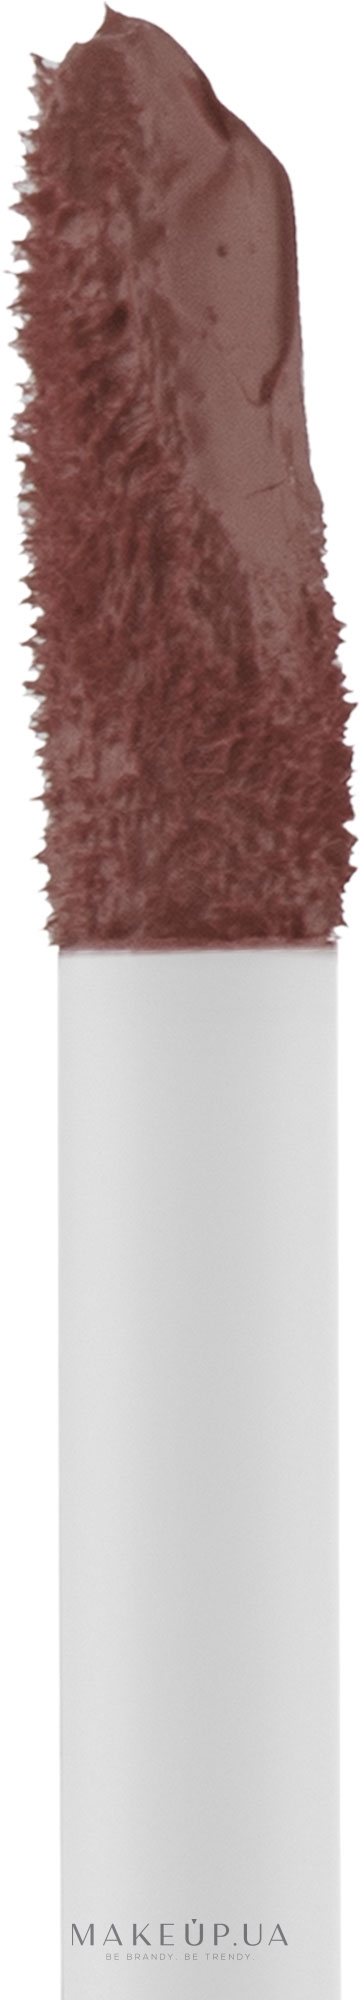 Матовая жидкая помада для губ - Lavish Care Xtra Long Lasting Matte Liquid Lipcolor — фото 1